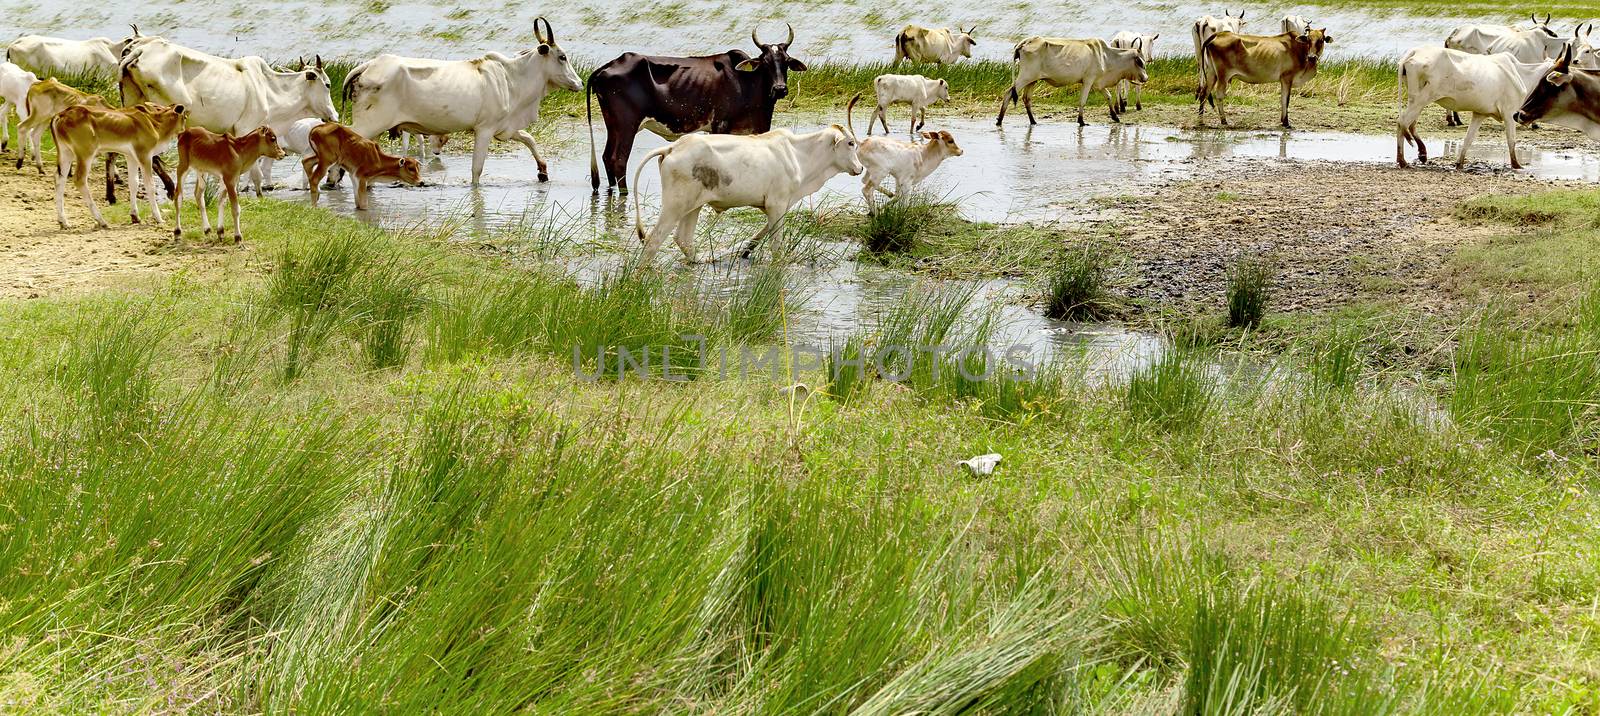 Zebu cattle walking watering place by Vladyslav